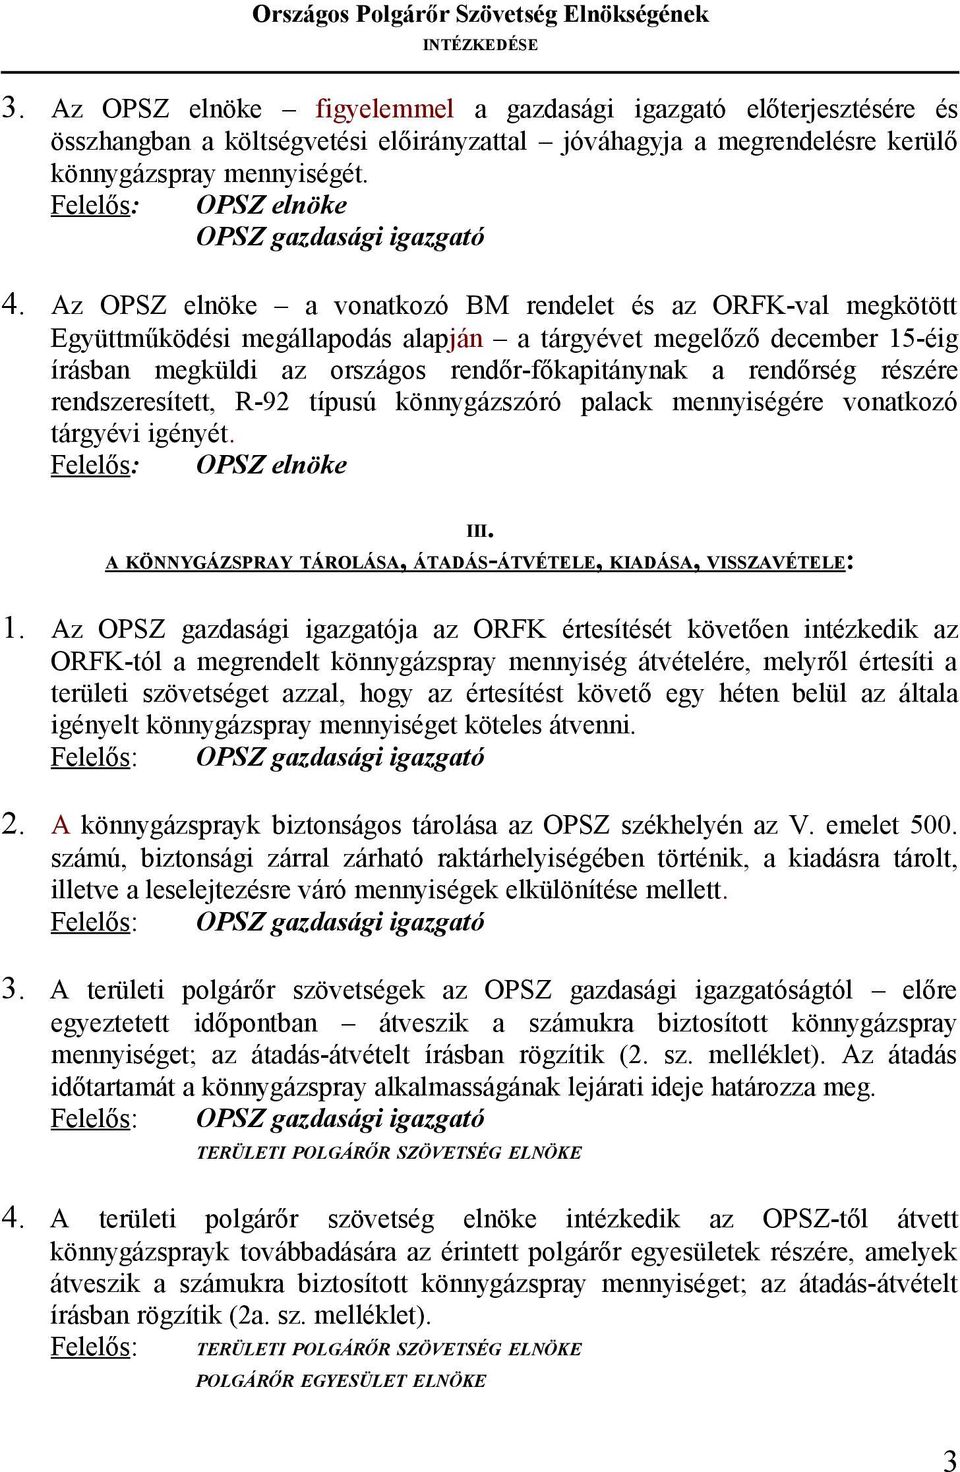 Az OPSZ elnöke a vonatkozó BM rendelet és az ORFK-val megkötött Együttműködési megállapodás alapján a tárgyévet megelőző december 15-éig írásban megküldi az országos rendőr-főkapitánynak a rendőrség